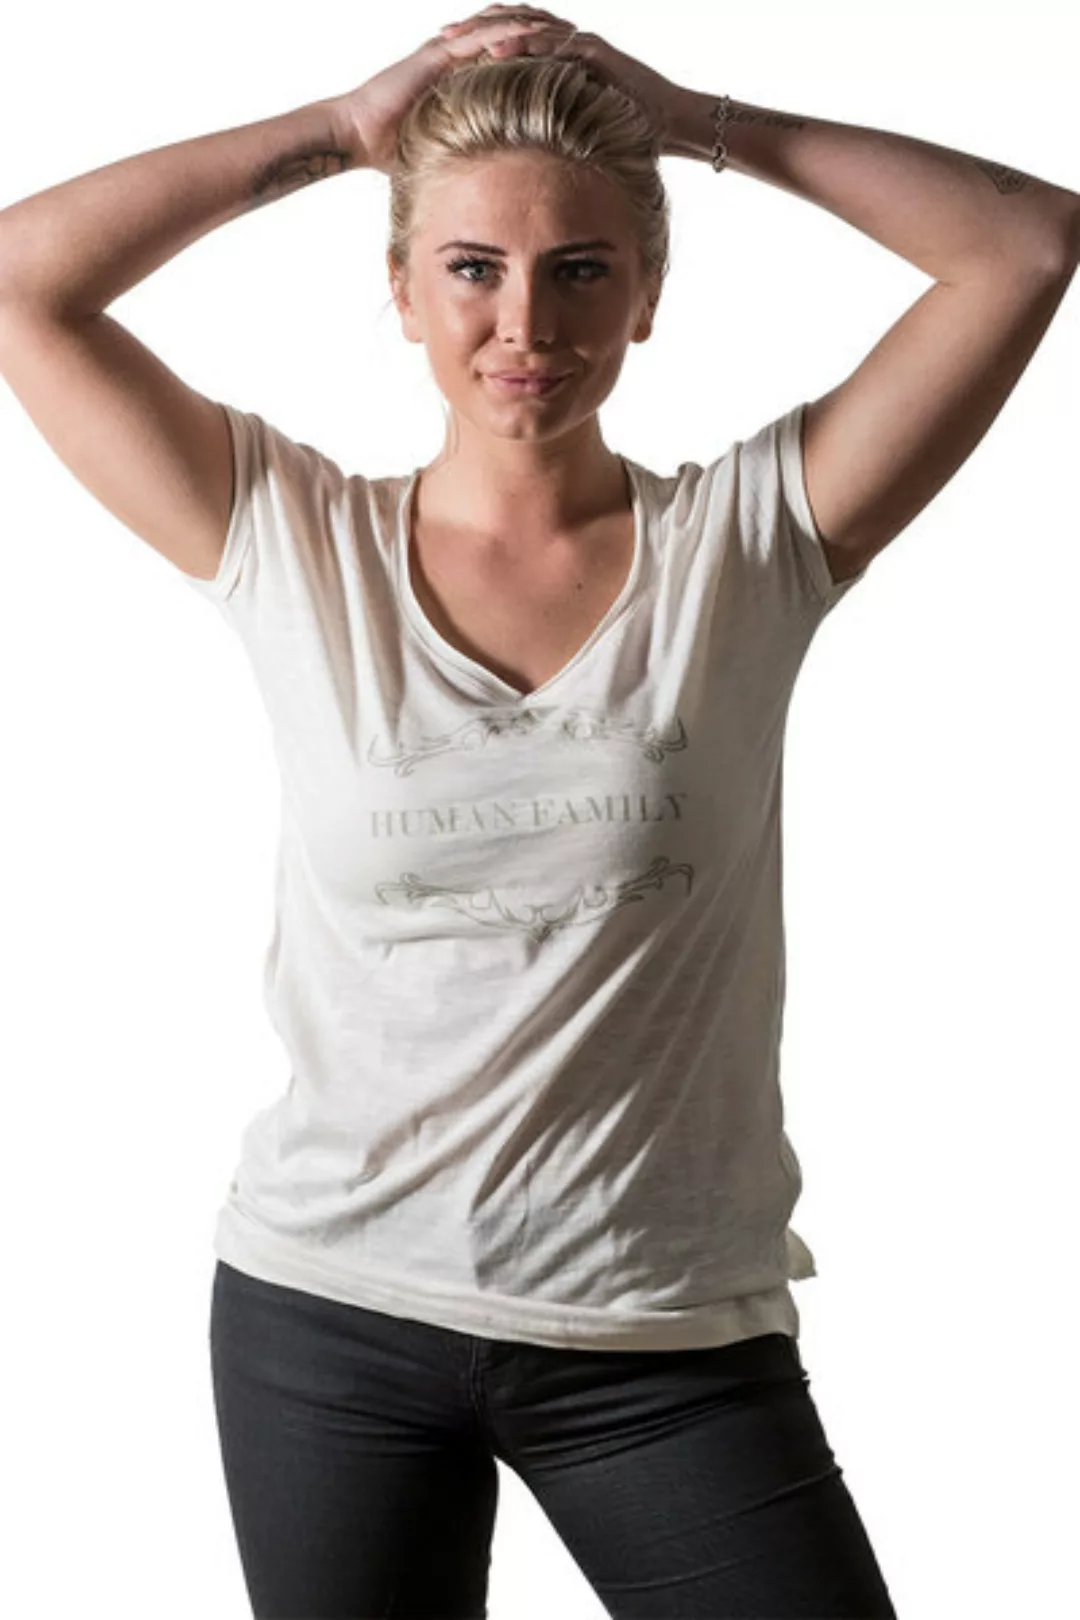 Bio Shirt "Imagine Traditional" Von Human Family günstig online kaufen